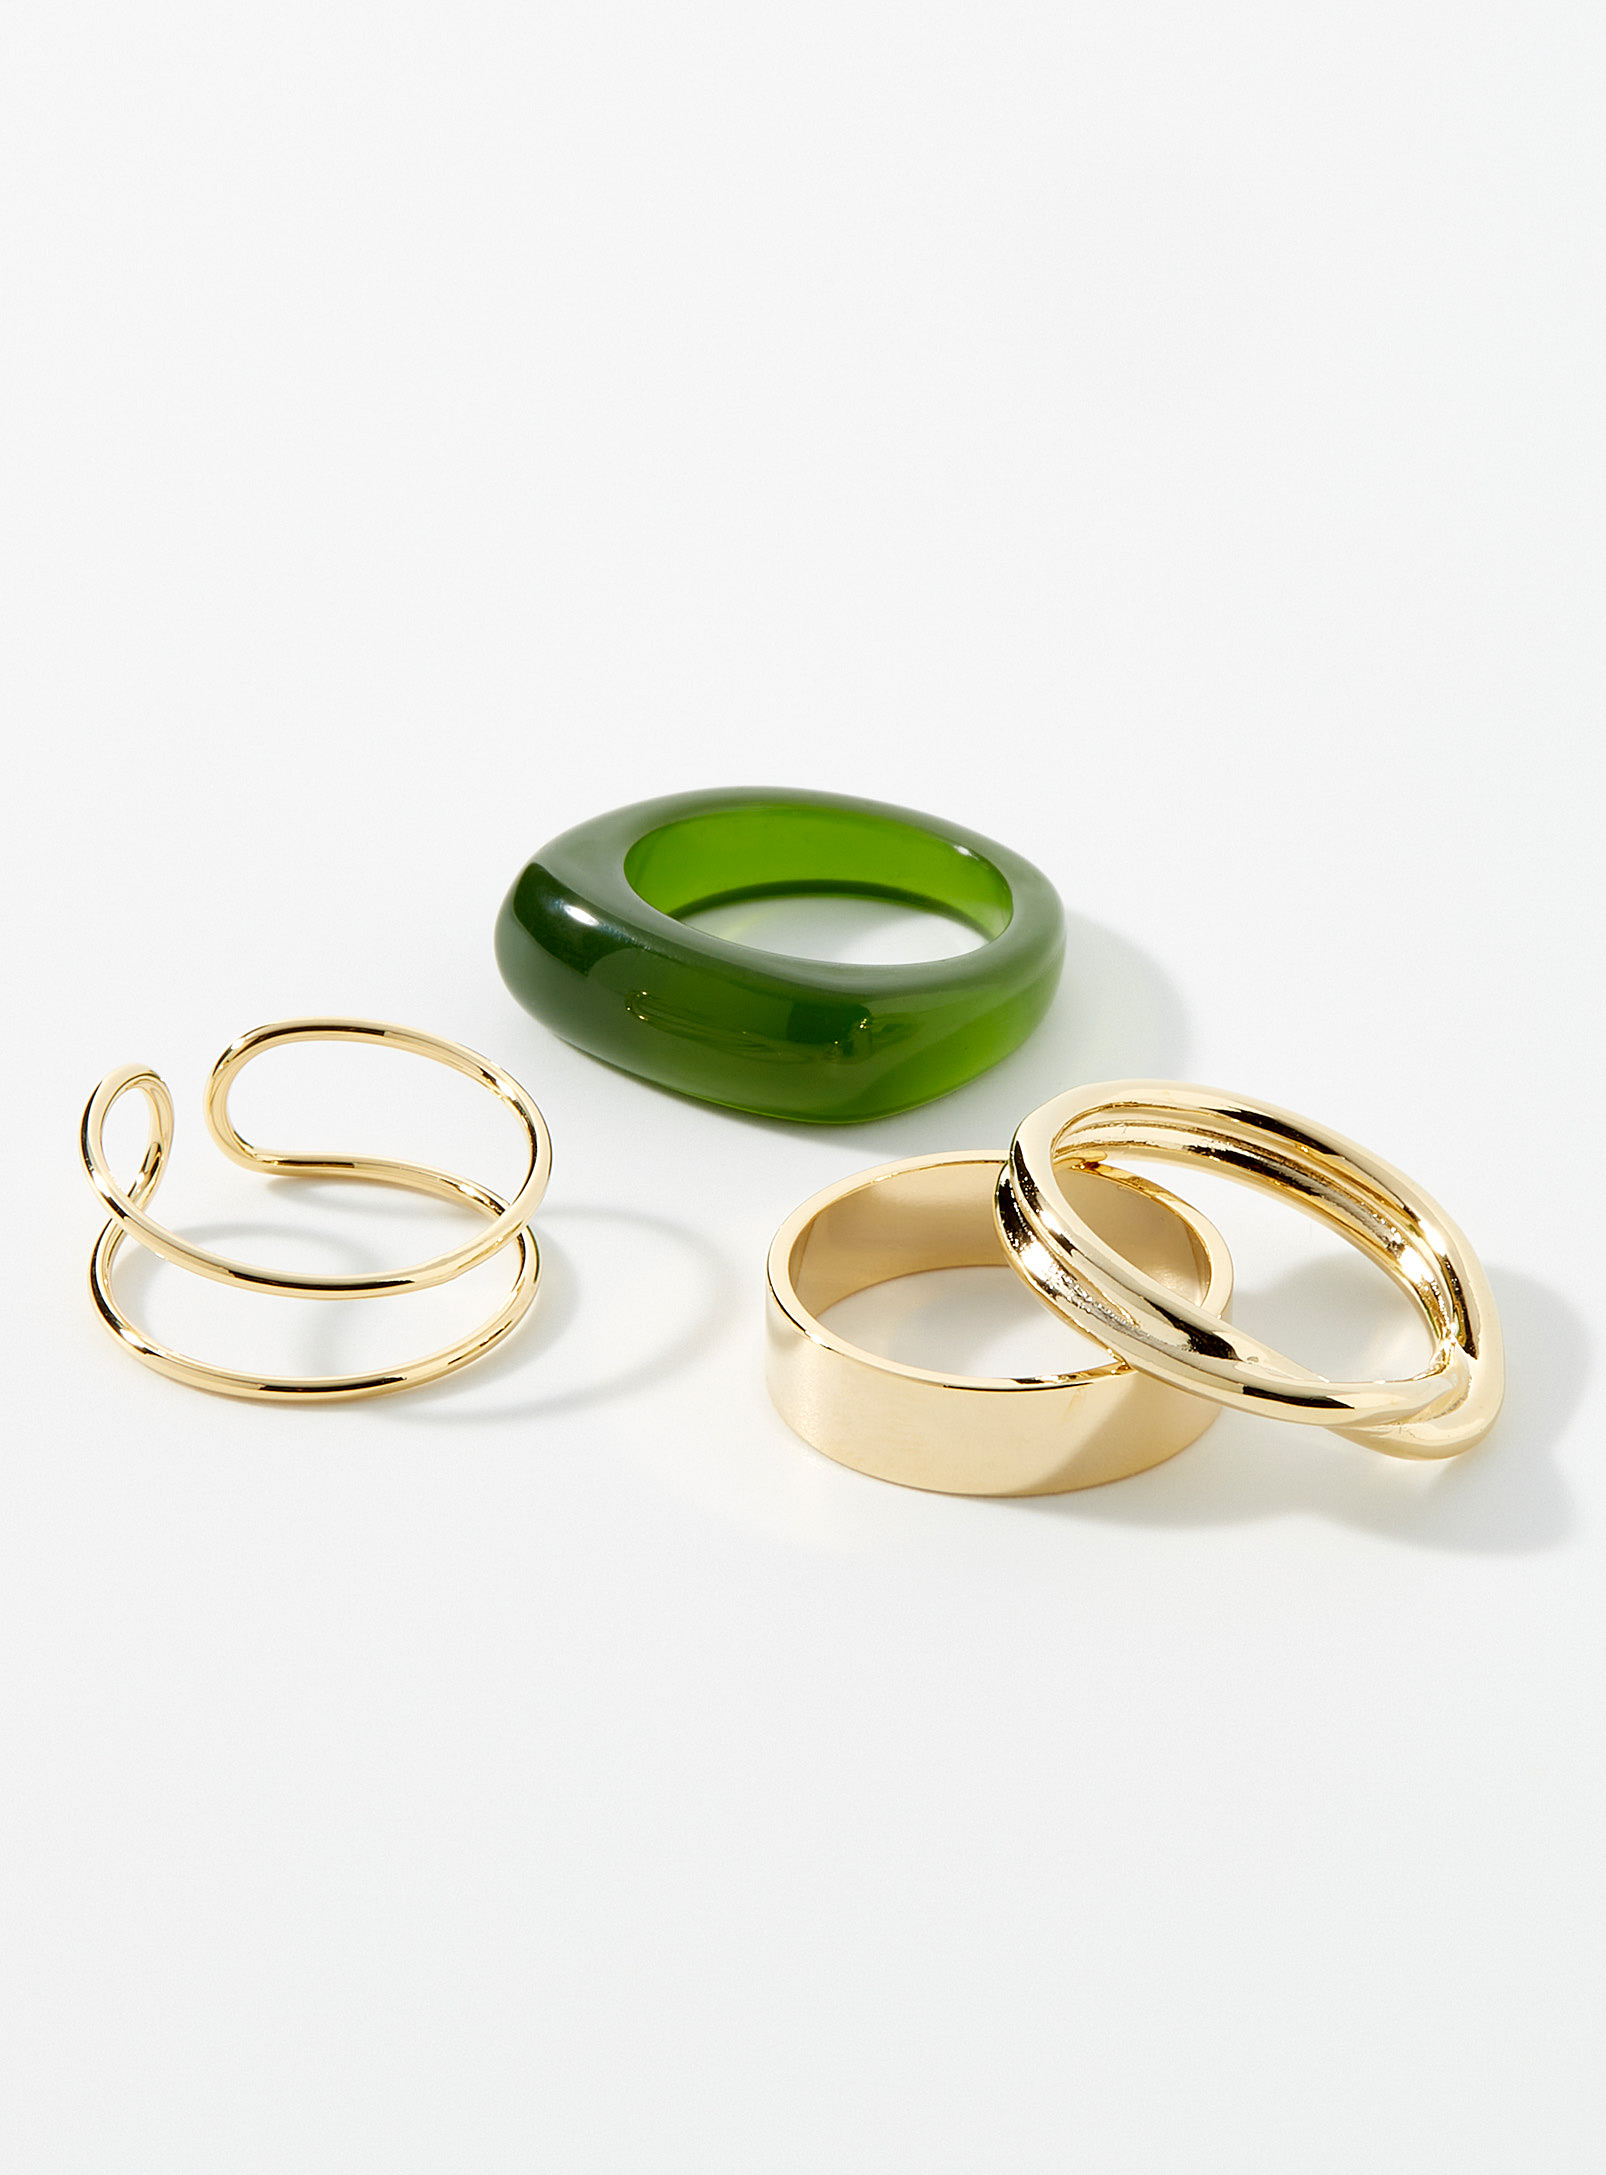 Simons - Women's Multiform rings Set of 4